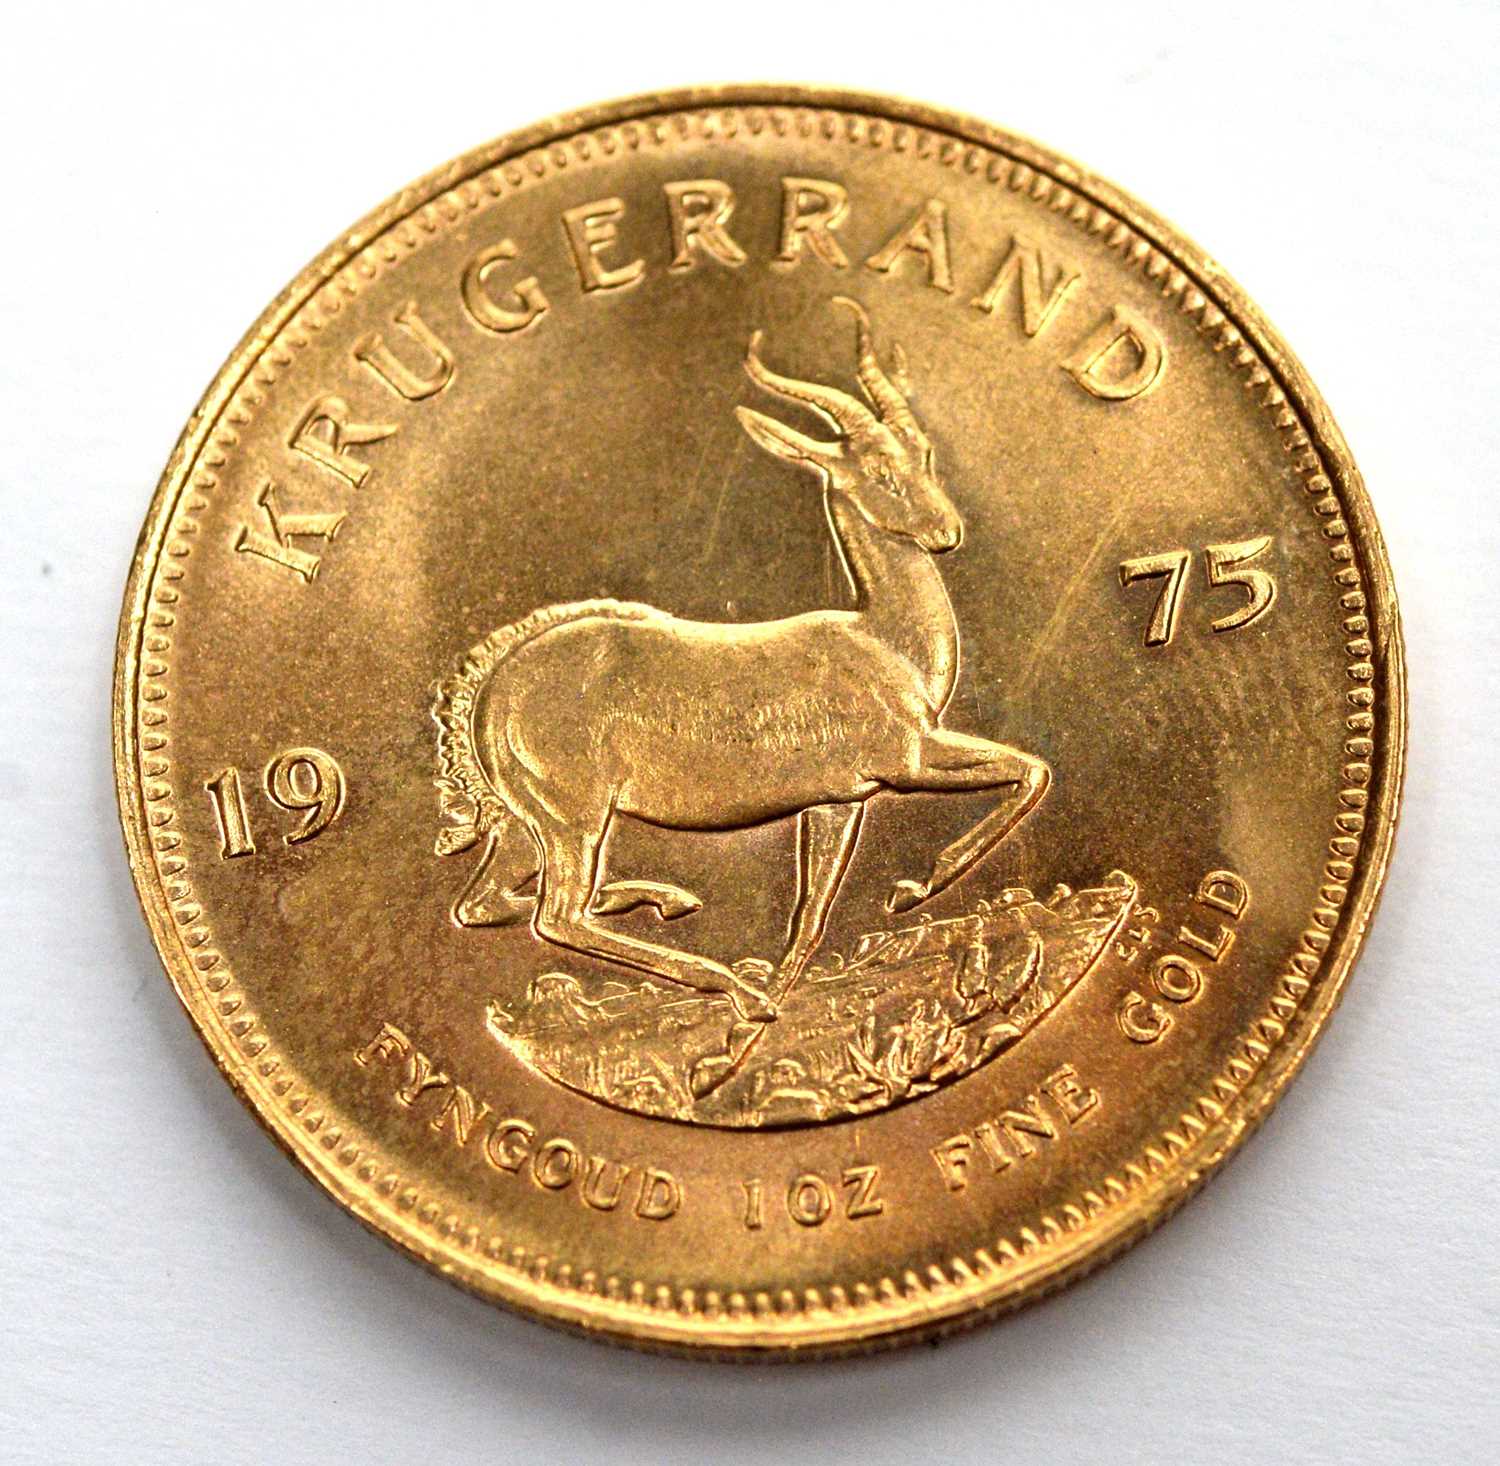 Lot 231 - South Africa 1oz fine gold Krugerrand, 1975.